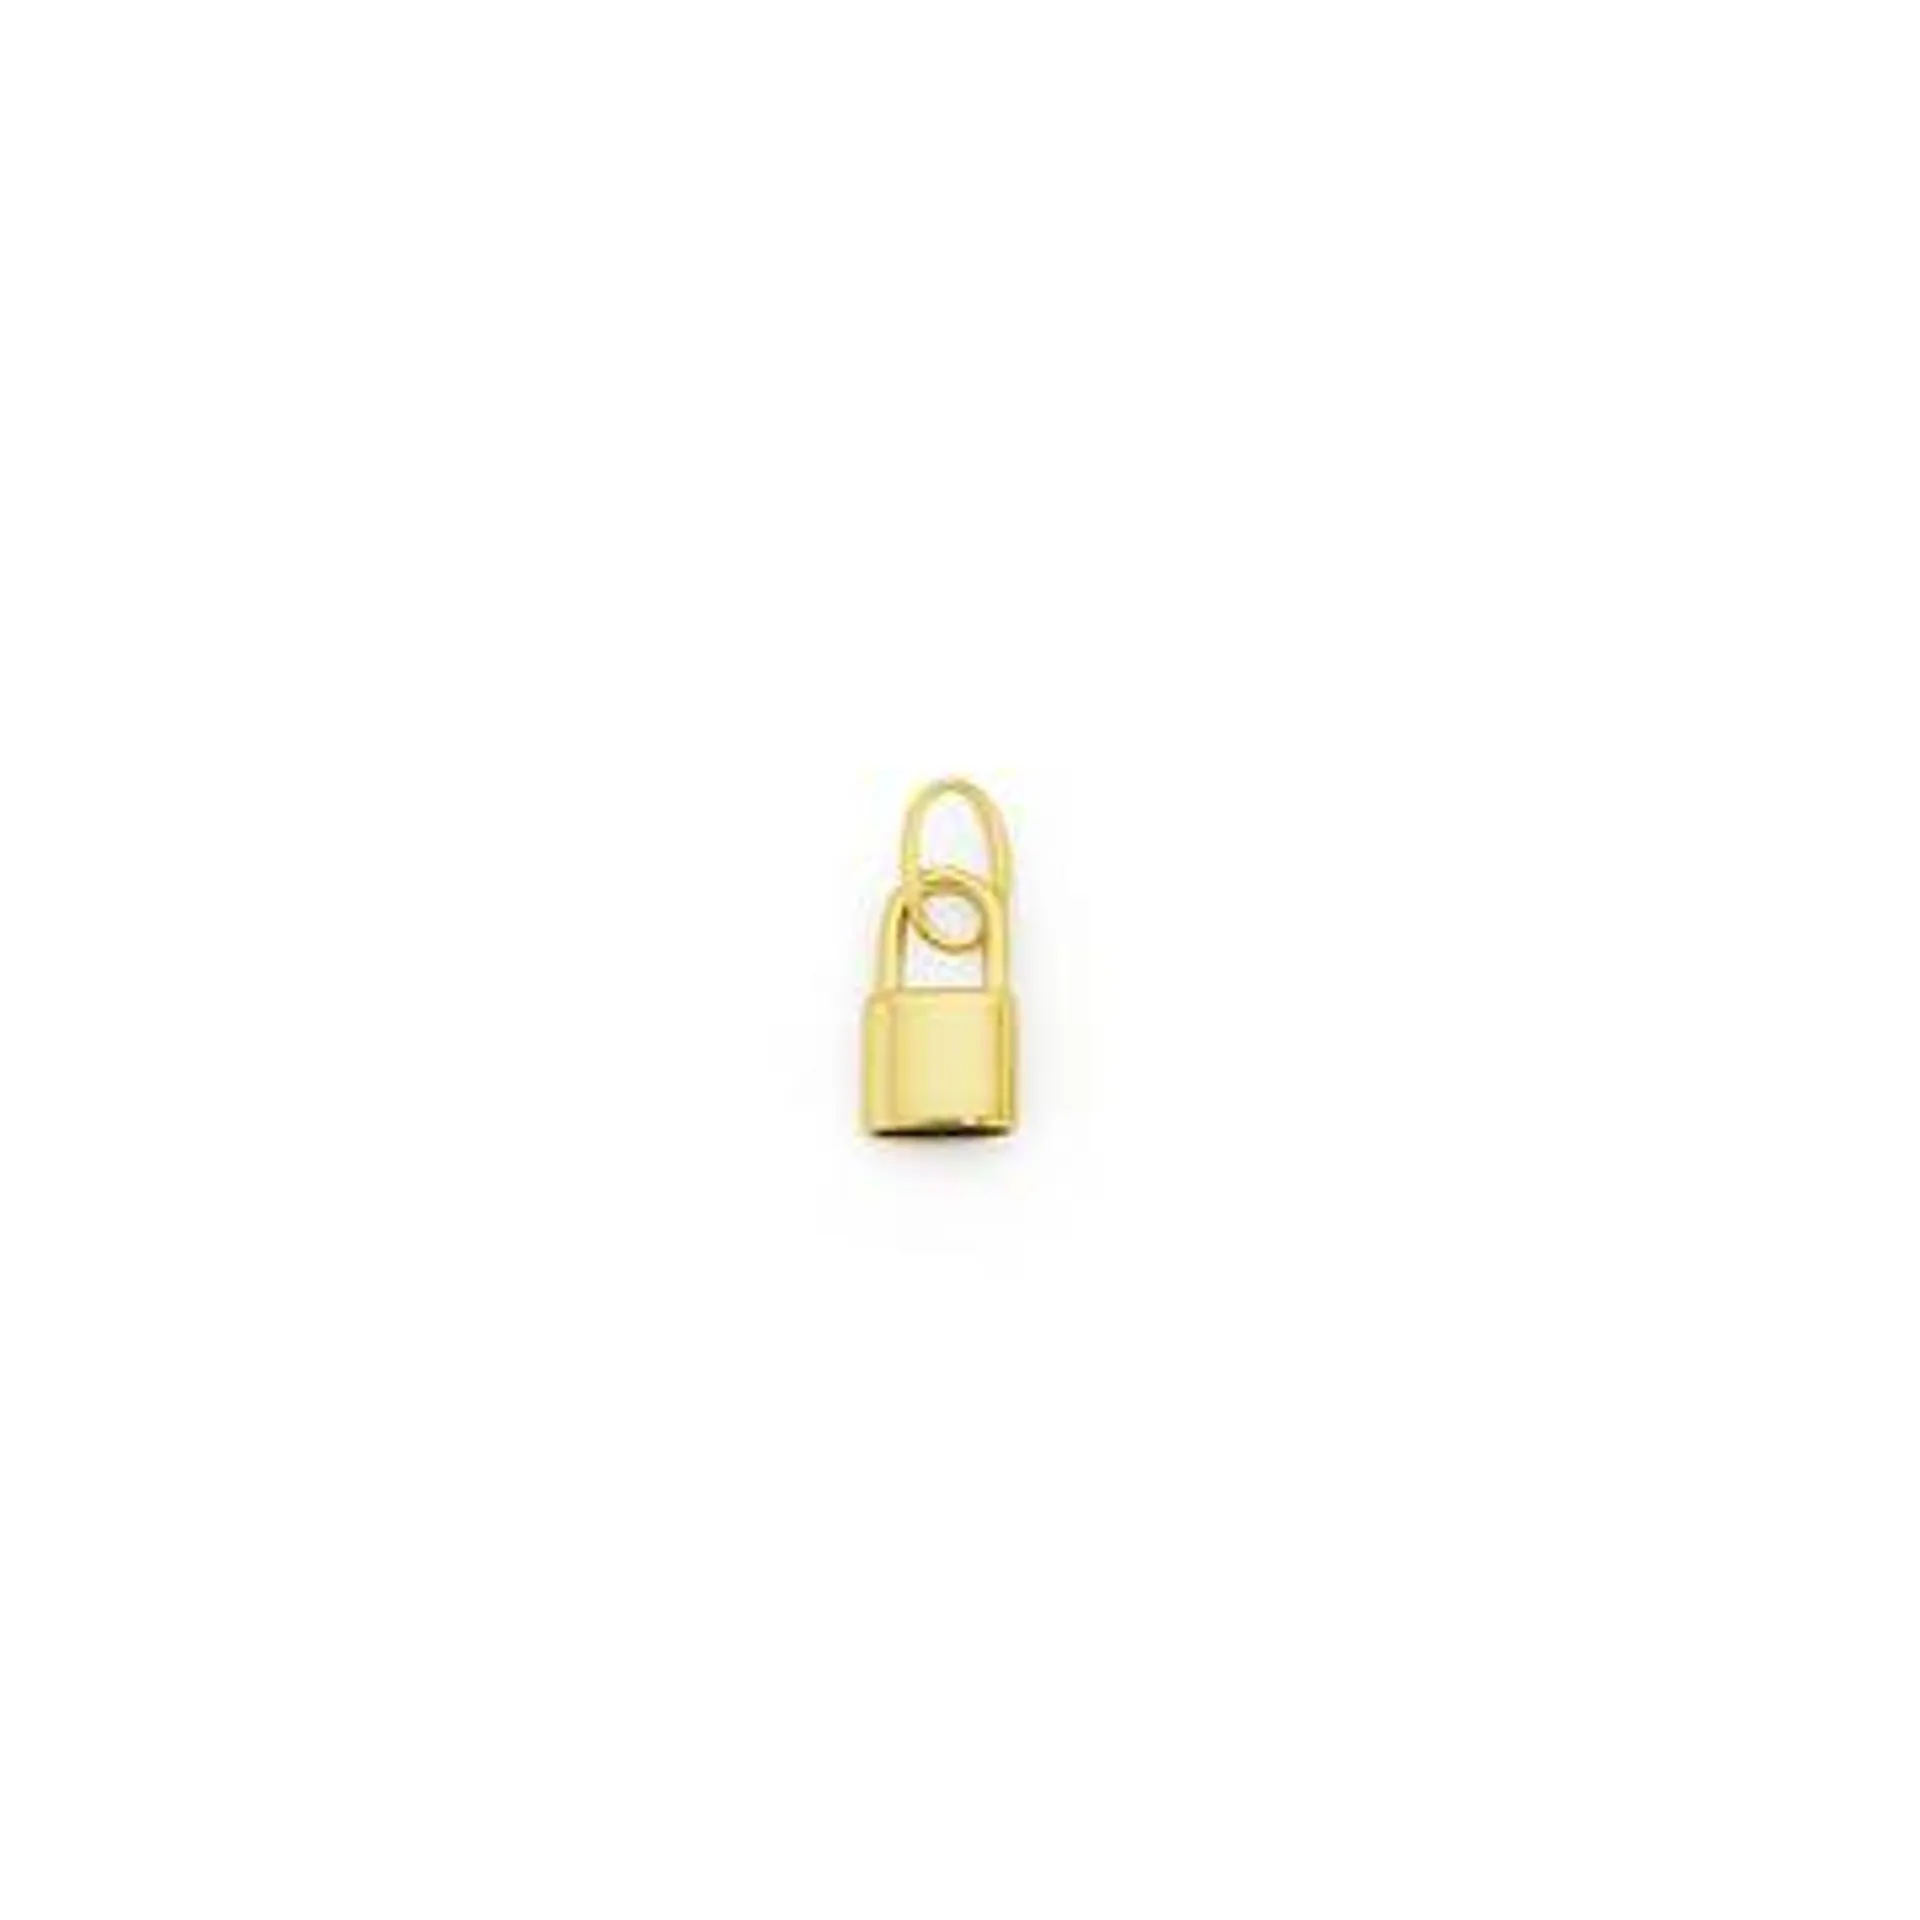 9ct, Mini Lock Pendant